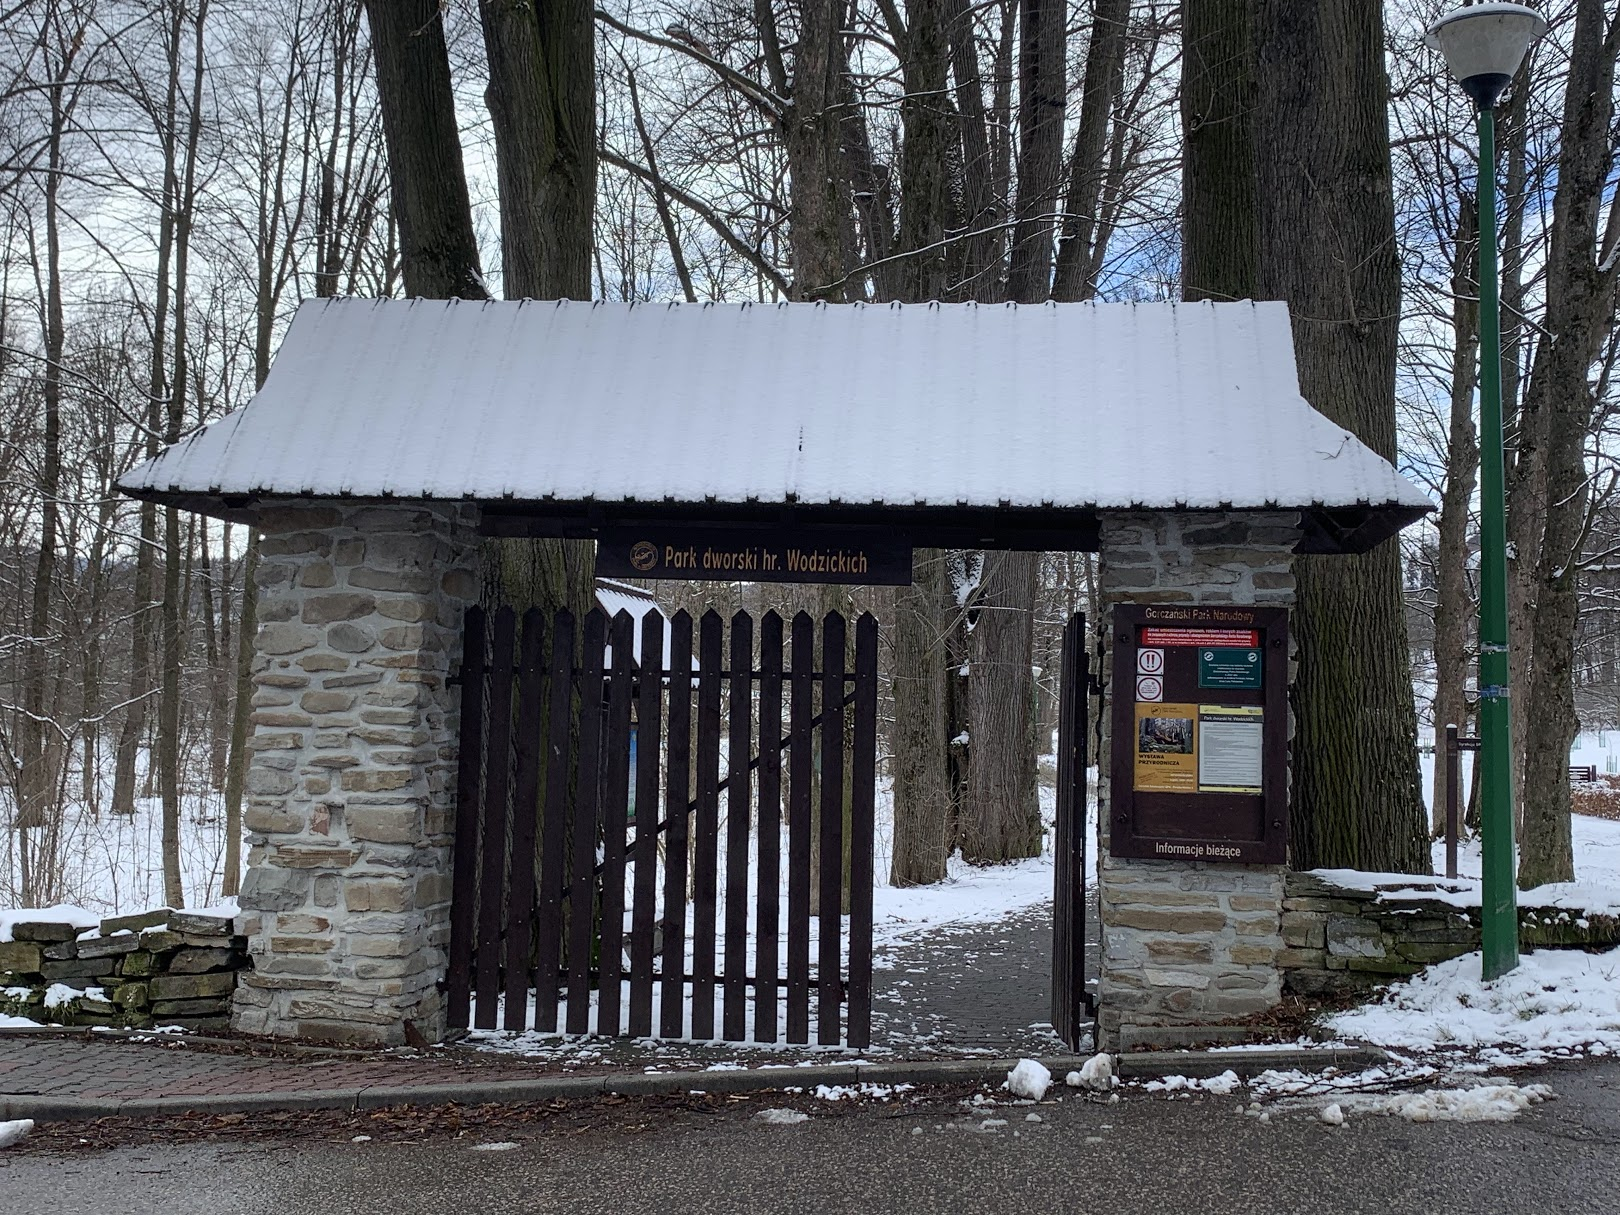 Wejście do parku hr. Wodzickich, od strony dyrekcji GPN